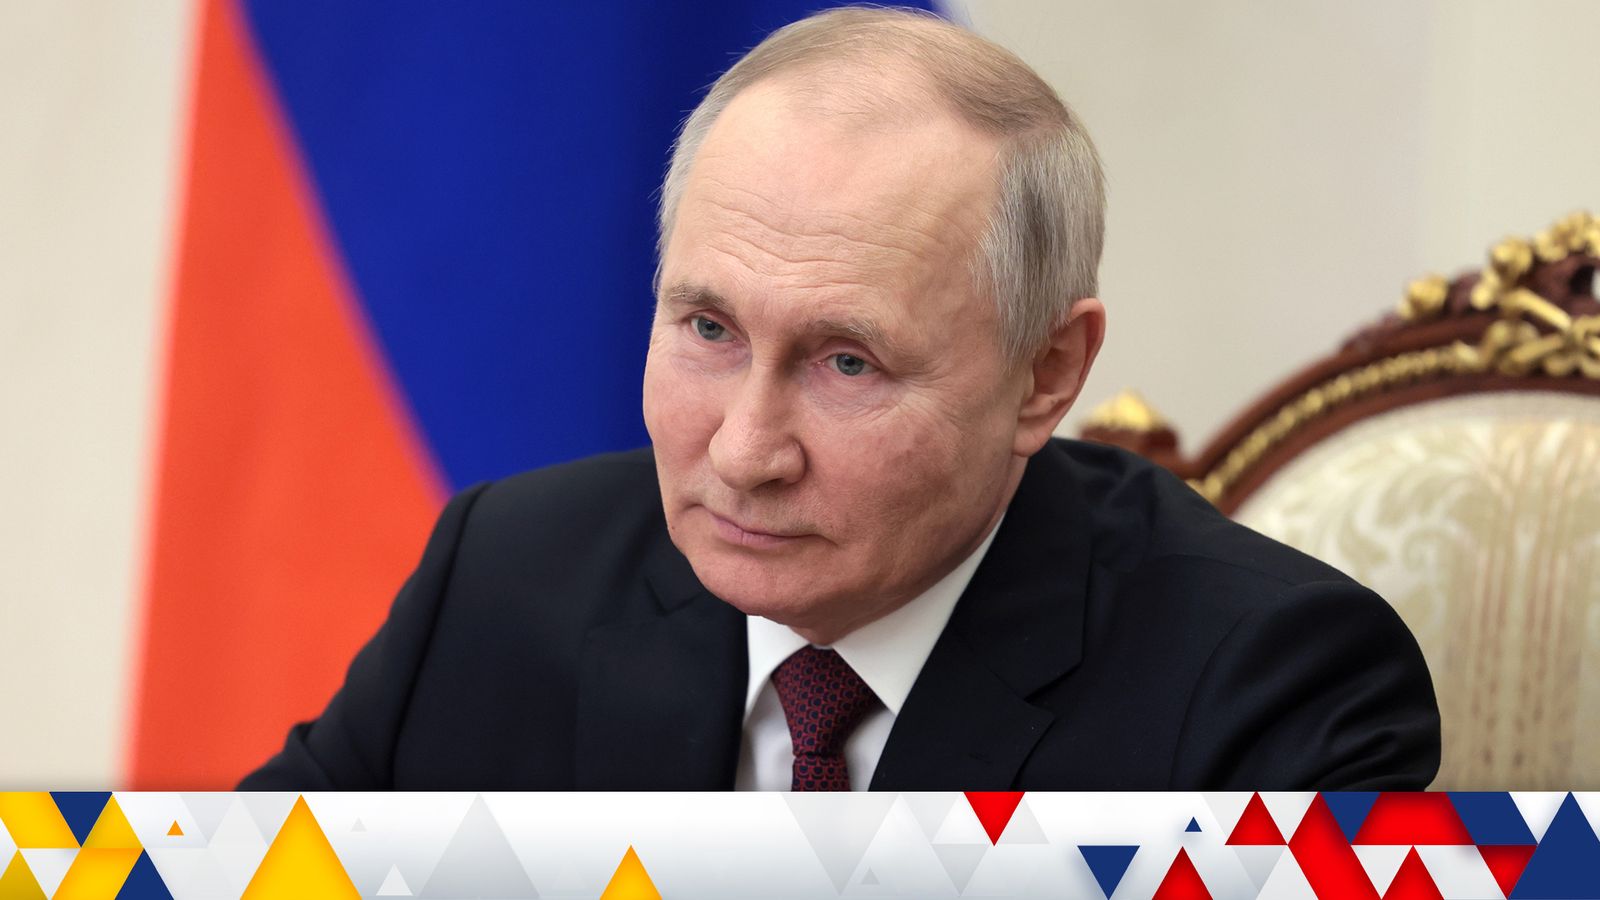 Guerra de Ucrania – Últimas actualizaciones: Putin «no está listo para negociar y busca la victoria completa»;  Líder de Crimea «crea su propio grupo Wagner» |  noticias del mundo